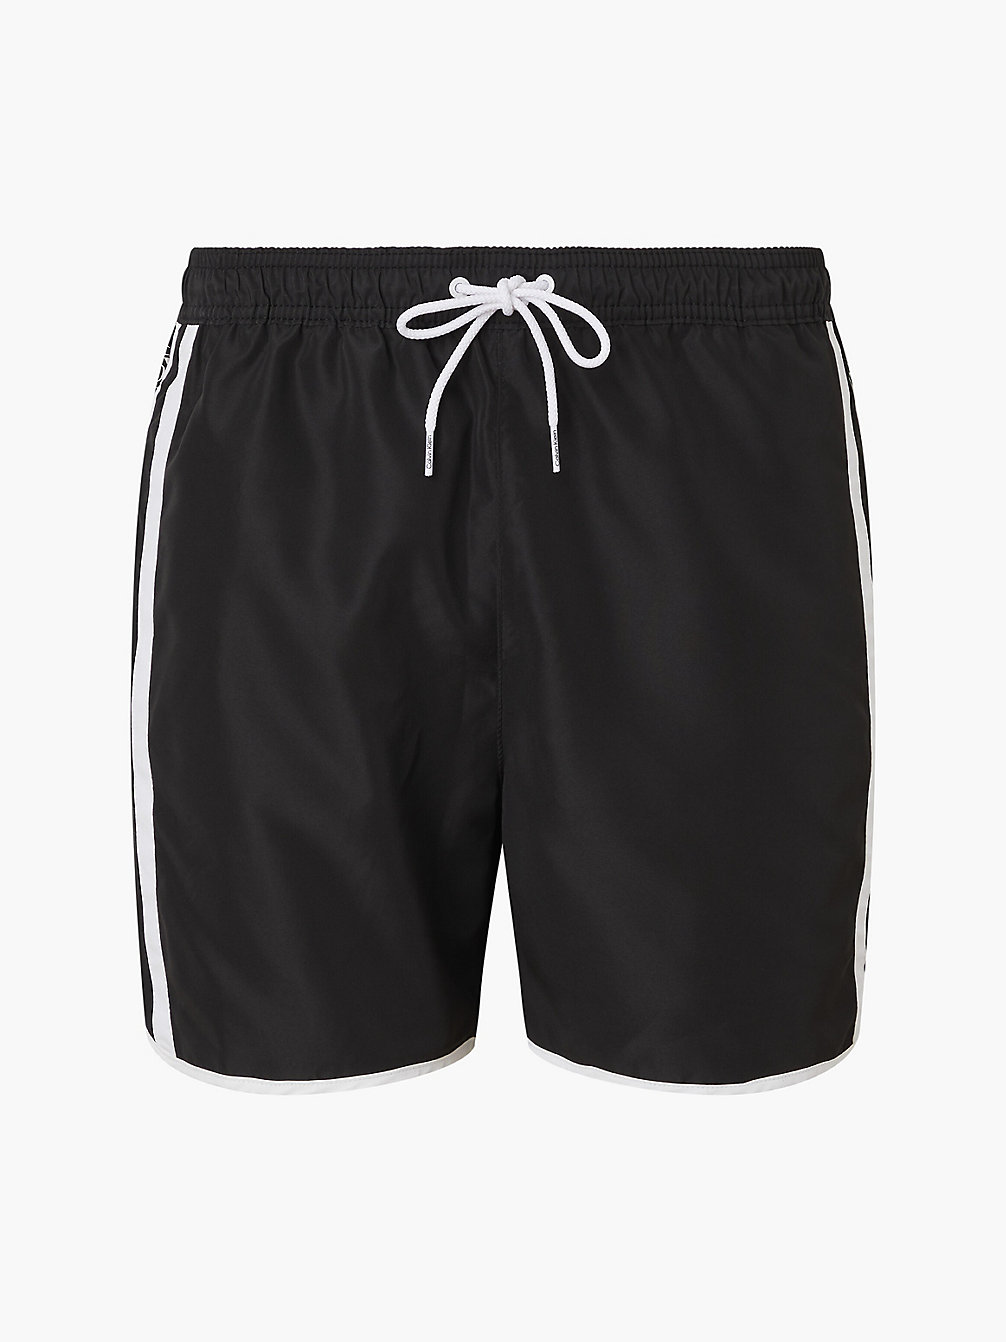 PVH BLACK > Спортивные плавательные шорты средней длины - CK One > undefined женщины - Calvin Klein